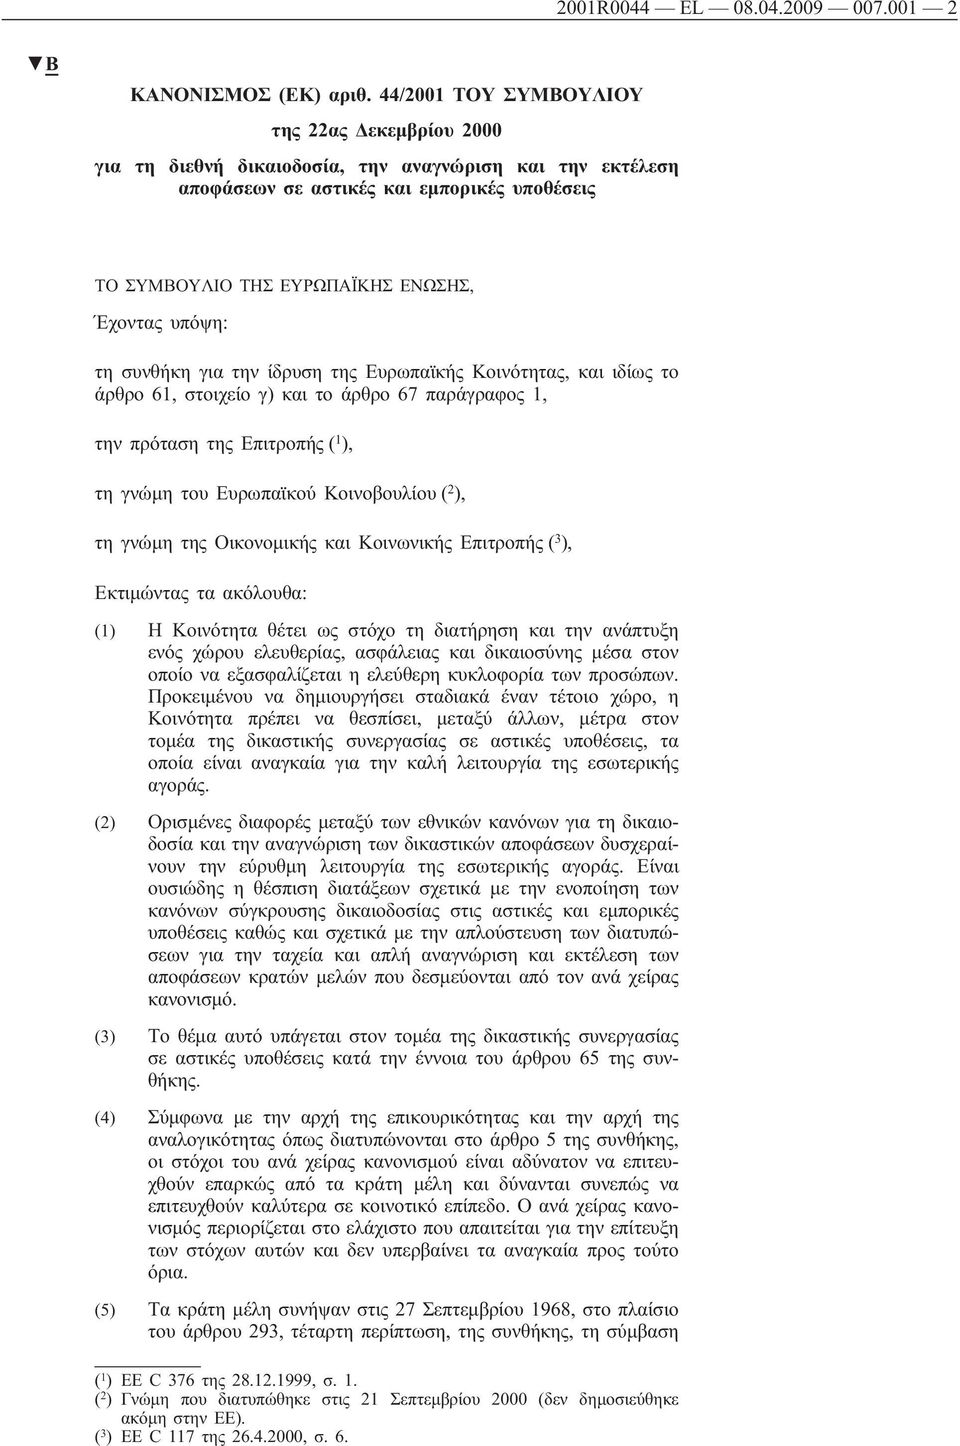 υπόψη: τη συνθήκη για την ίδρυση της Ευρωπαϊκής Κοινότητας, και ιδίως το άρθρο 61, στοιχείο γ) και το άρθρο 67 παράγραφος 1, την πρόταση της Επιτροπής ( 1 ), τη γνώμη του Ευρωπαϊκού Κοινοβουλίου ( 2